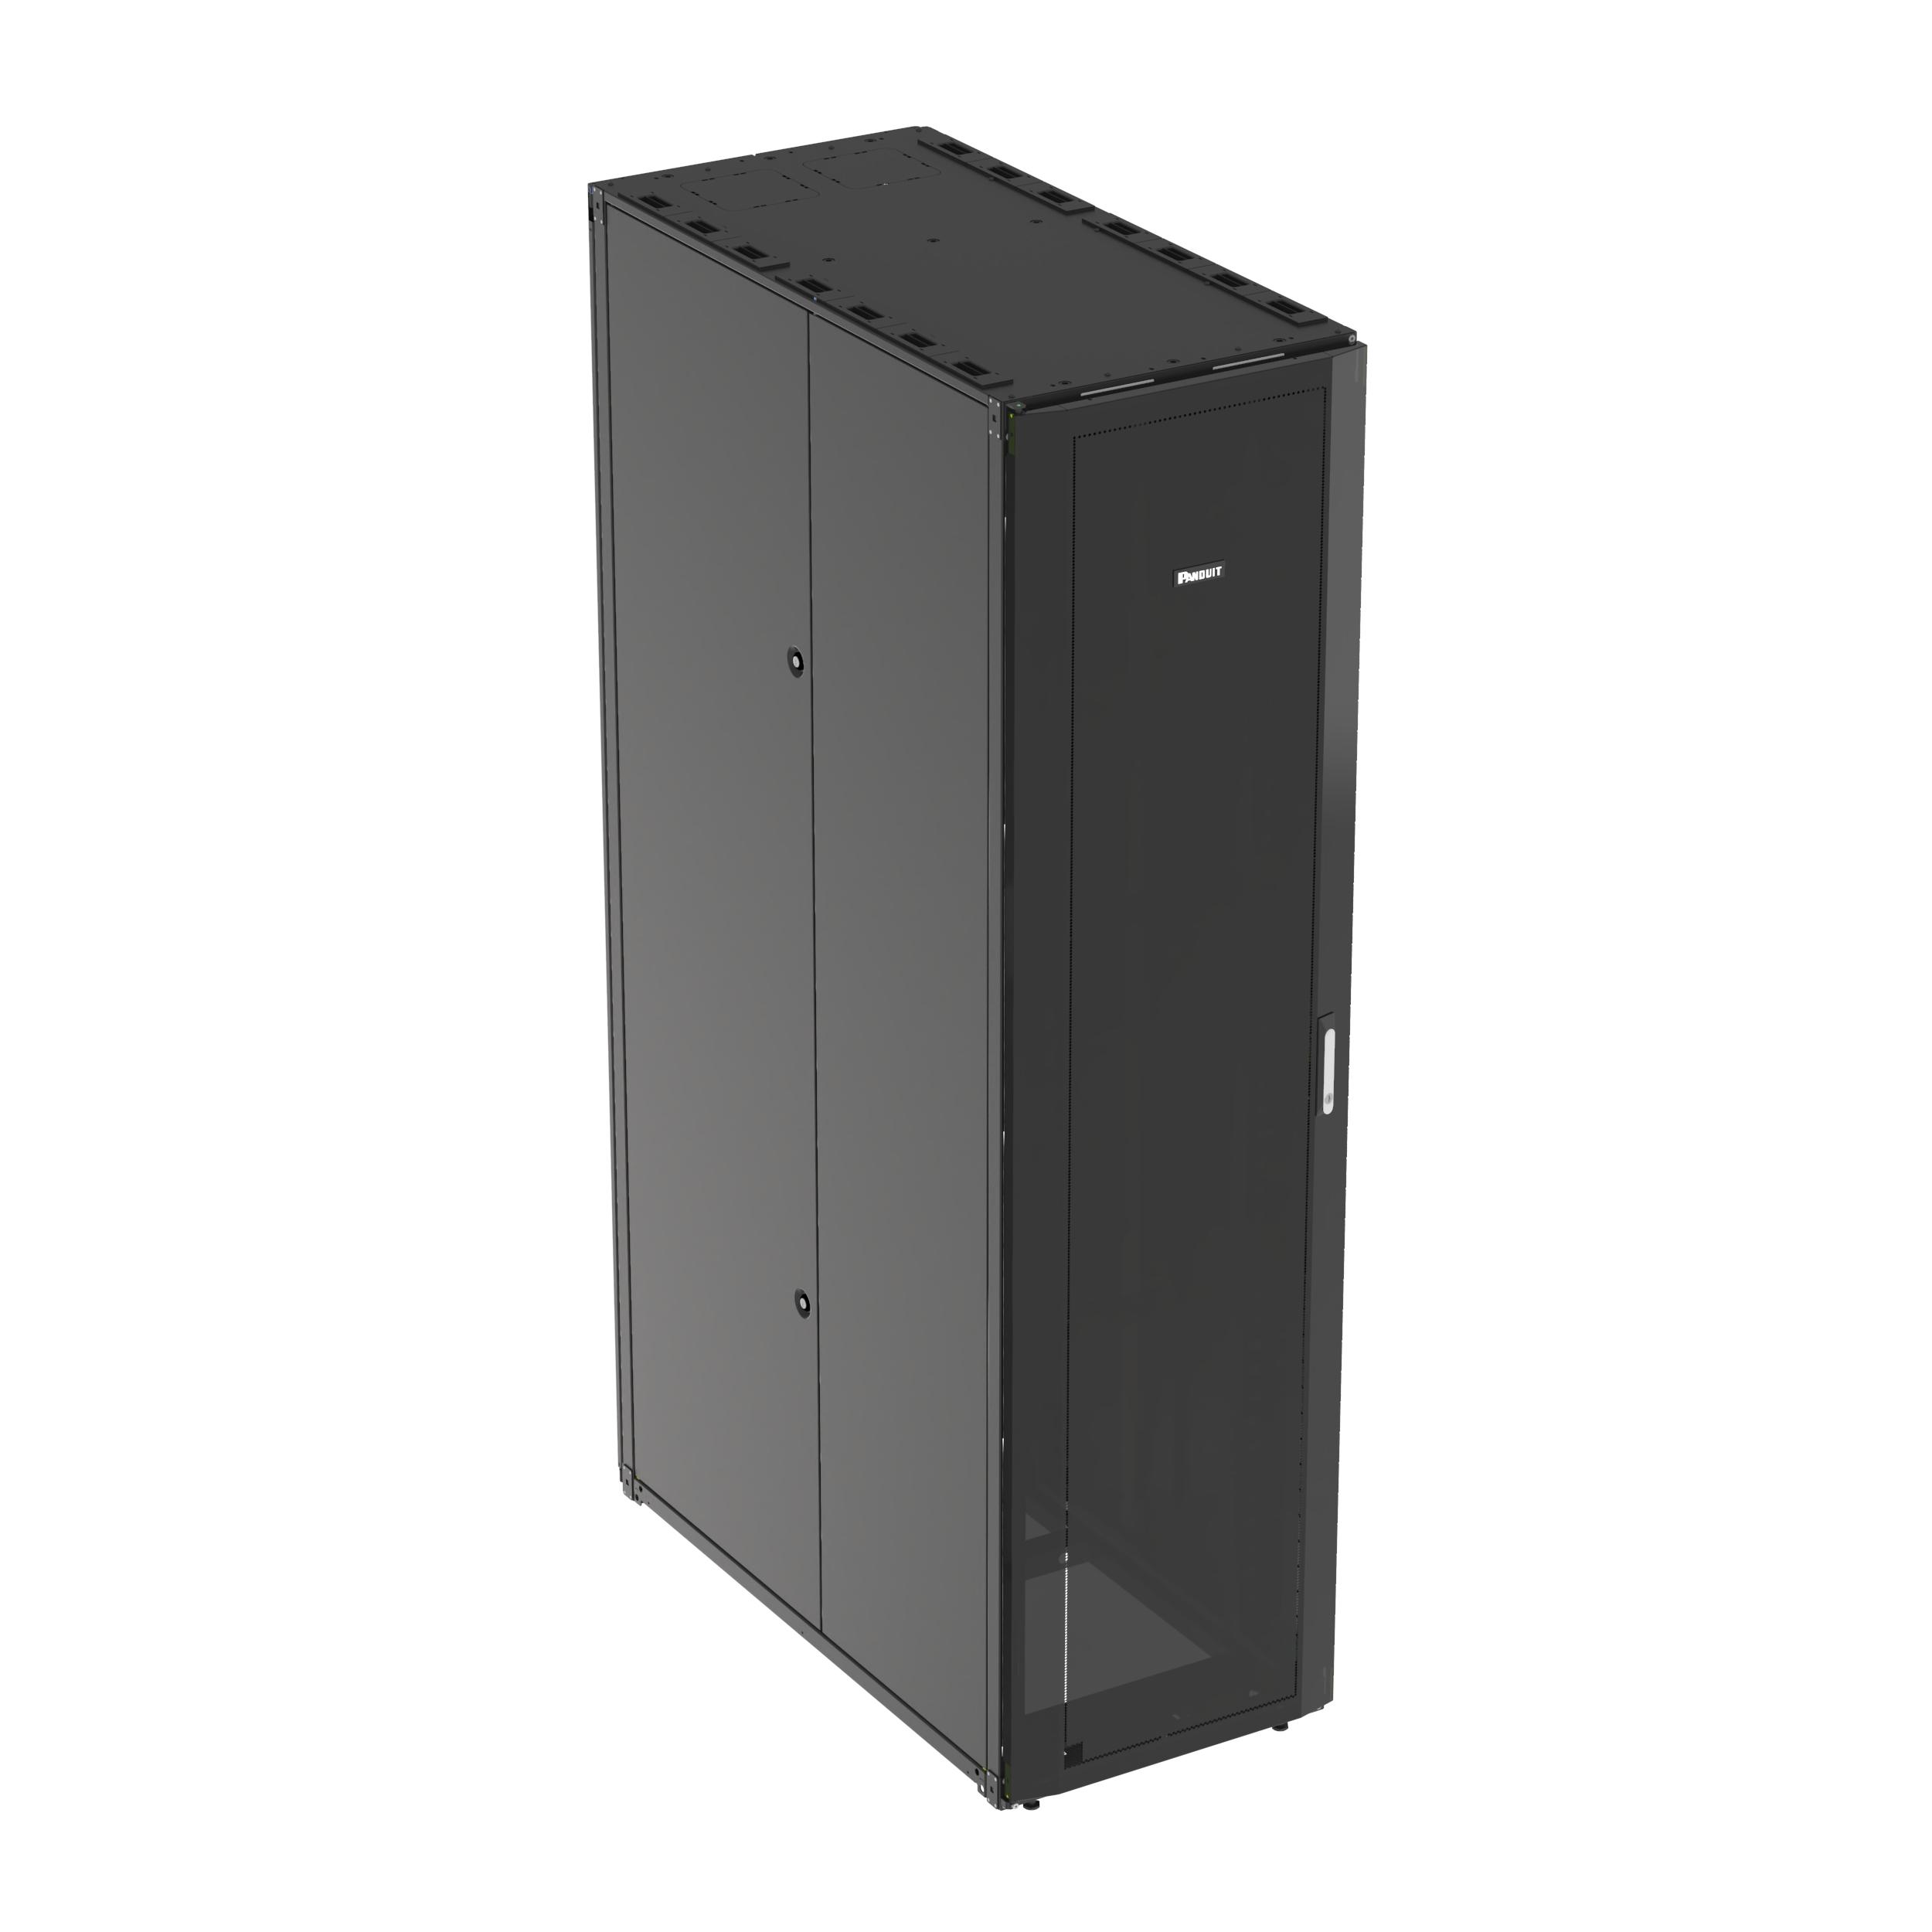 Panduit S6822BU Net-Access™ S-Type Cabinet